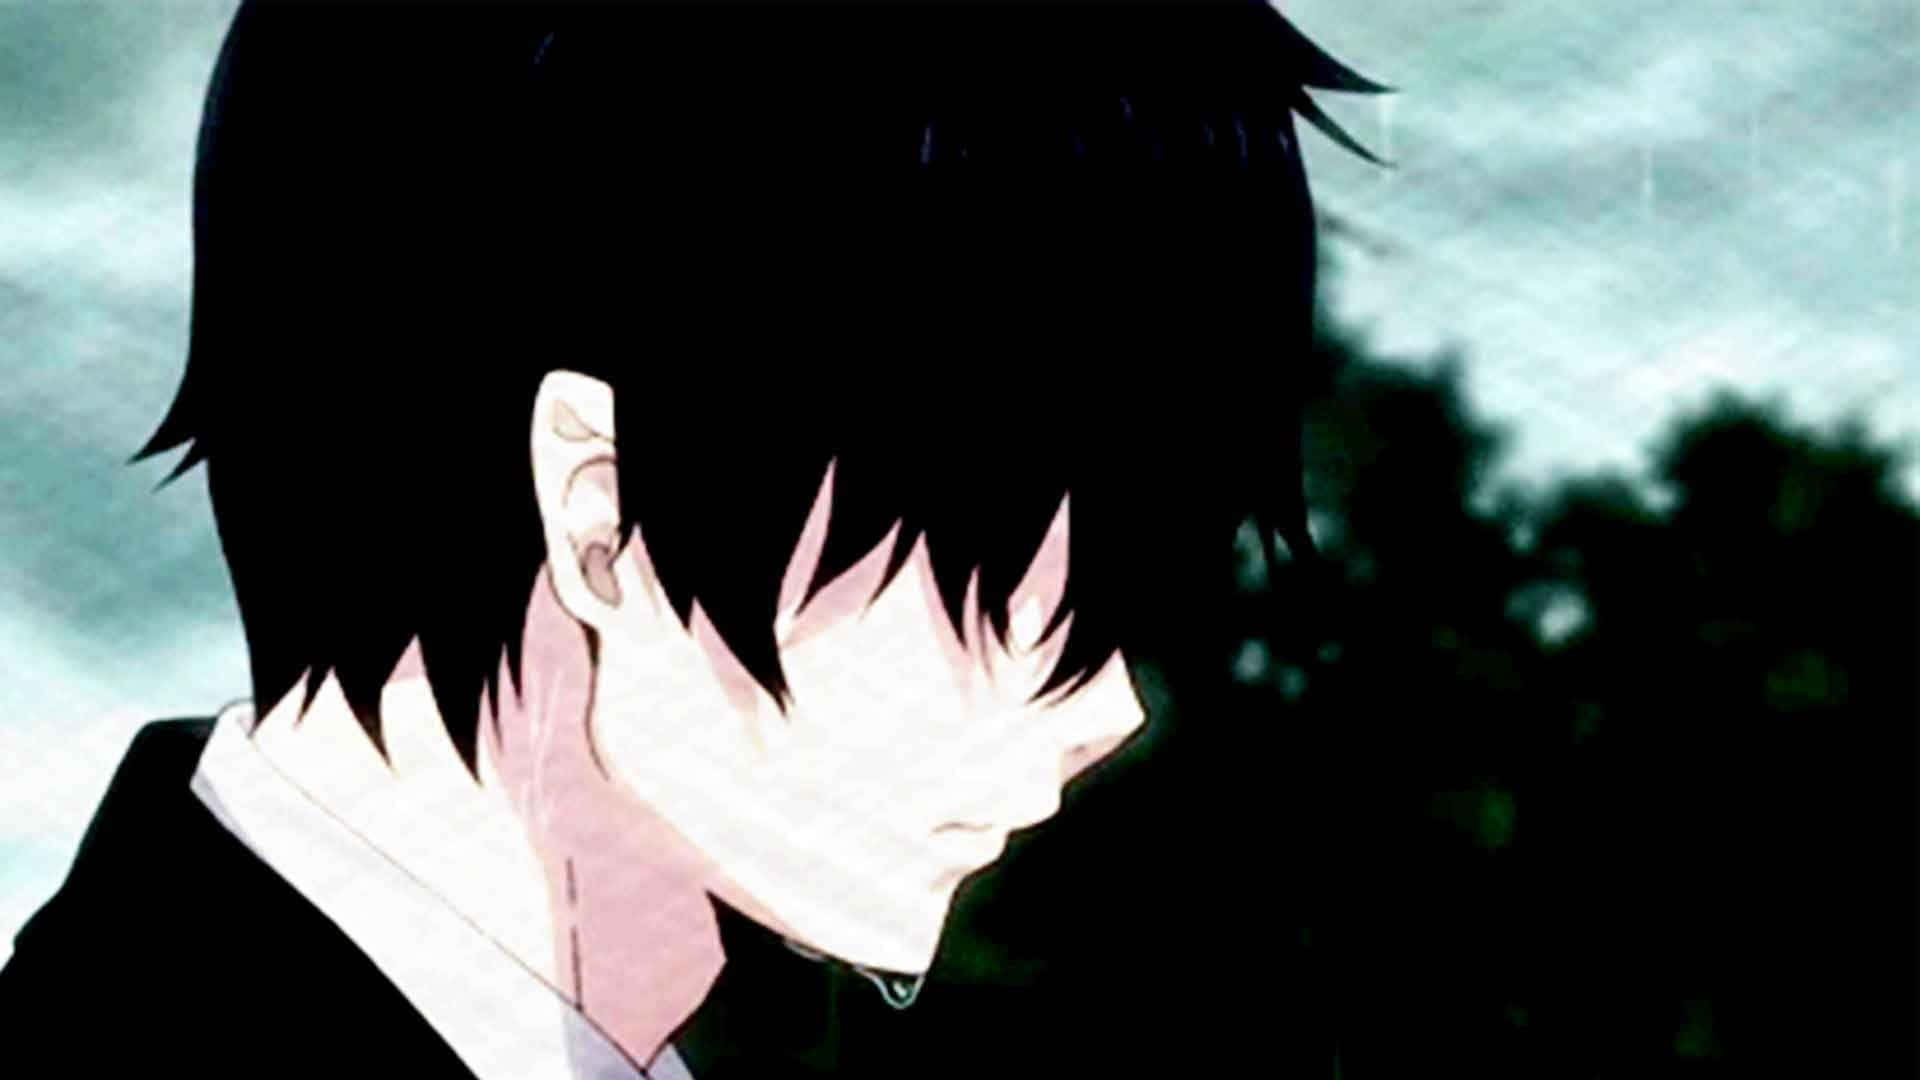 Unjoven Anime Solitario En Un Paisaje Vacío, Sintiéndose Abrumado Por La Tristeza. Fondo de pantalla